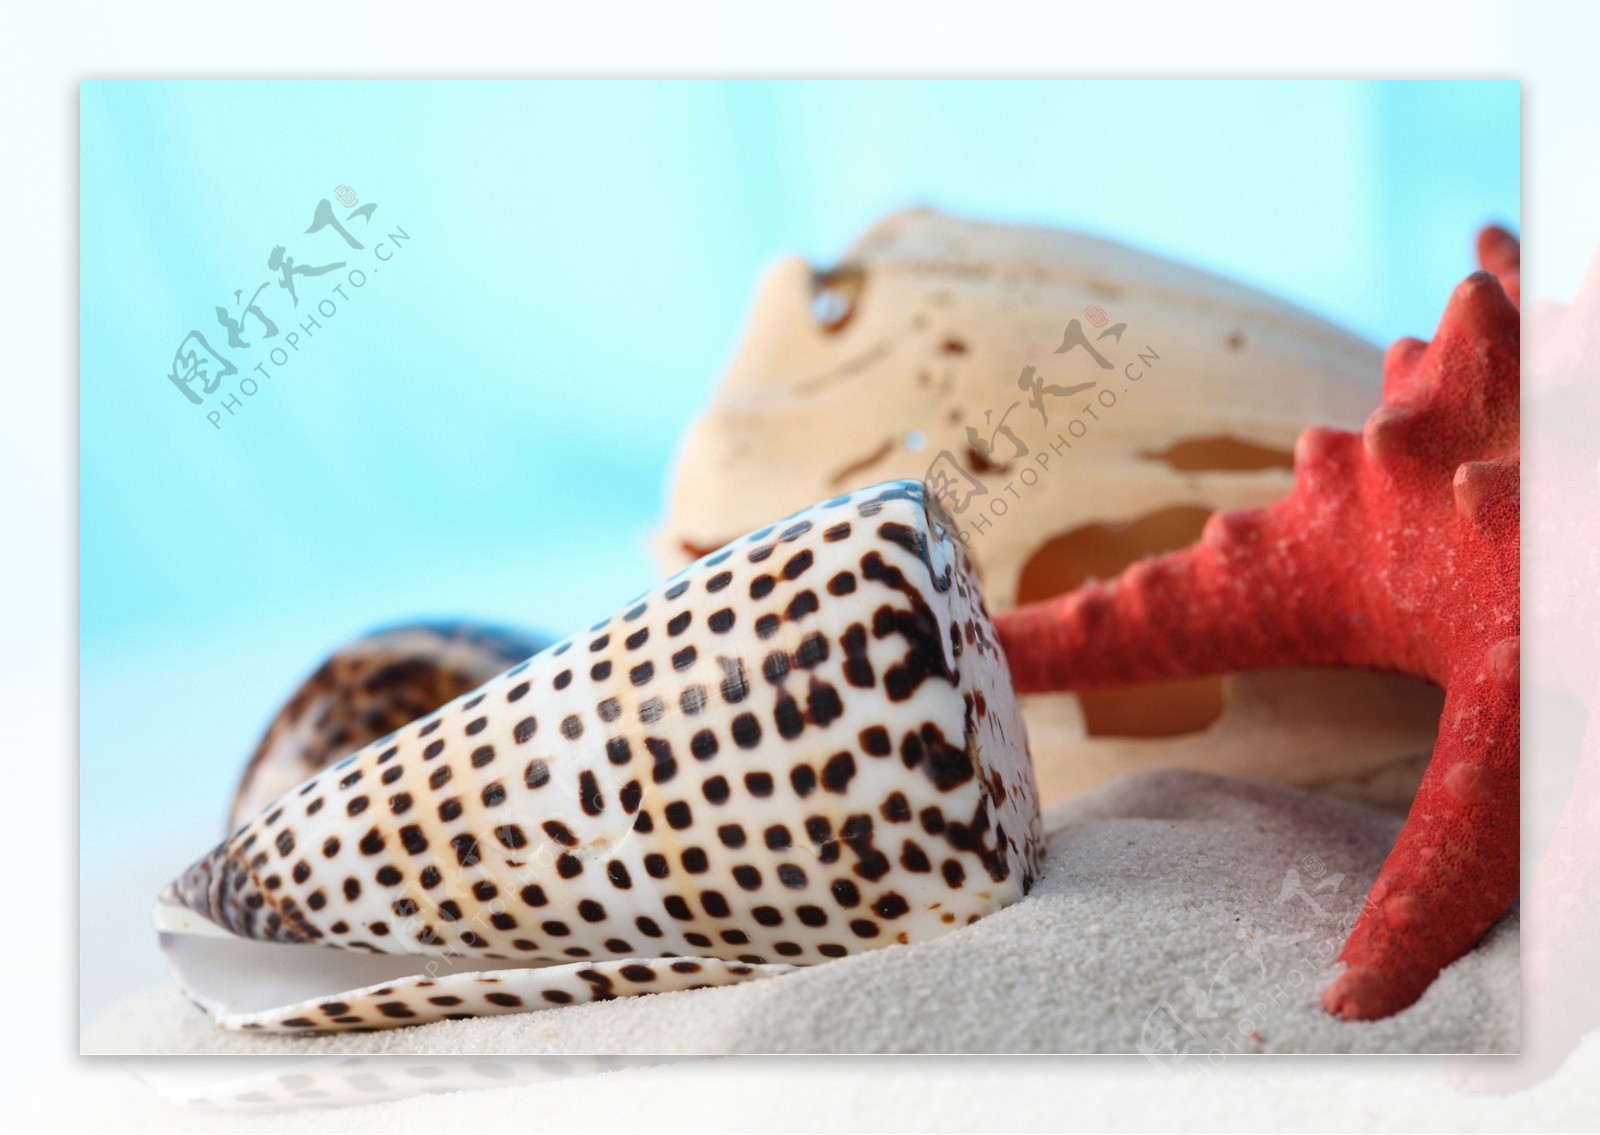 条纹贝壳海螺